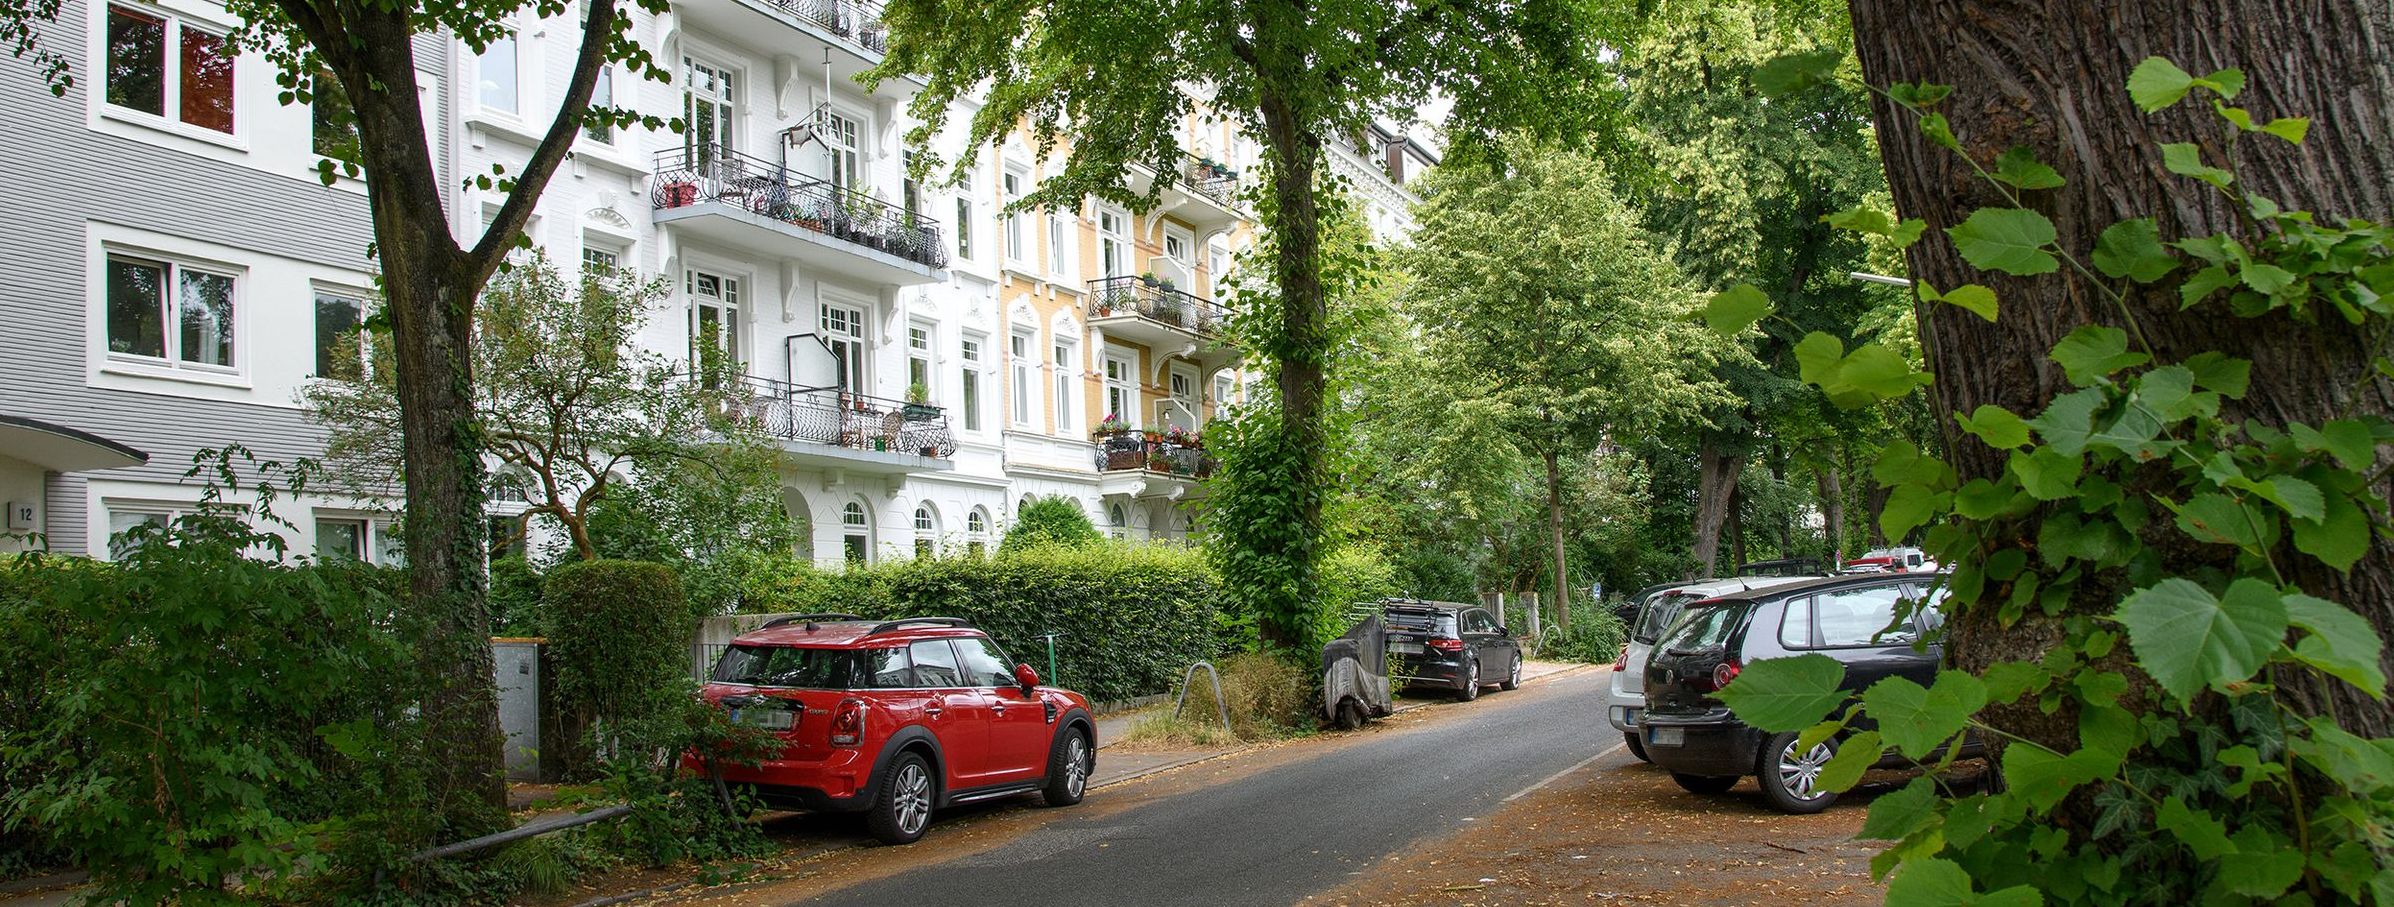 Straße mit parkenden Autos im städtischen Wohngebiet